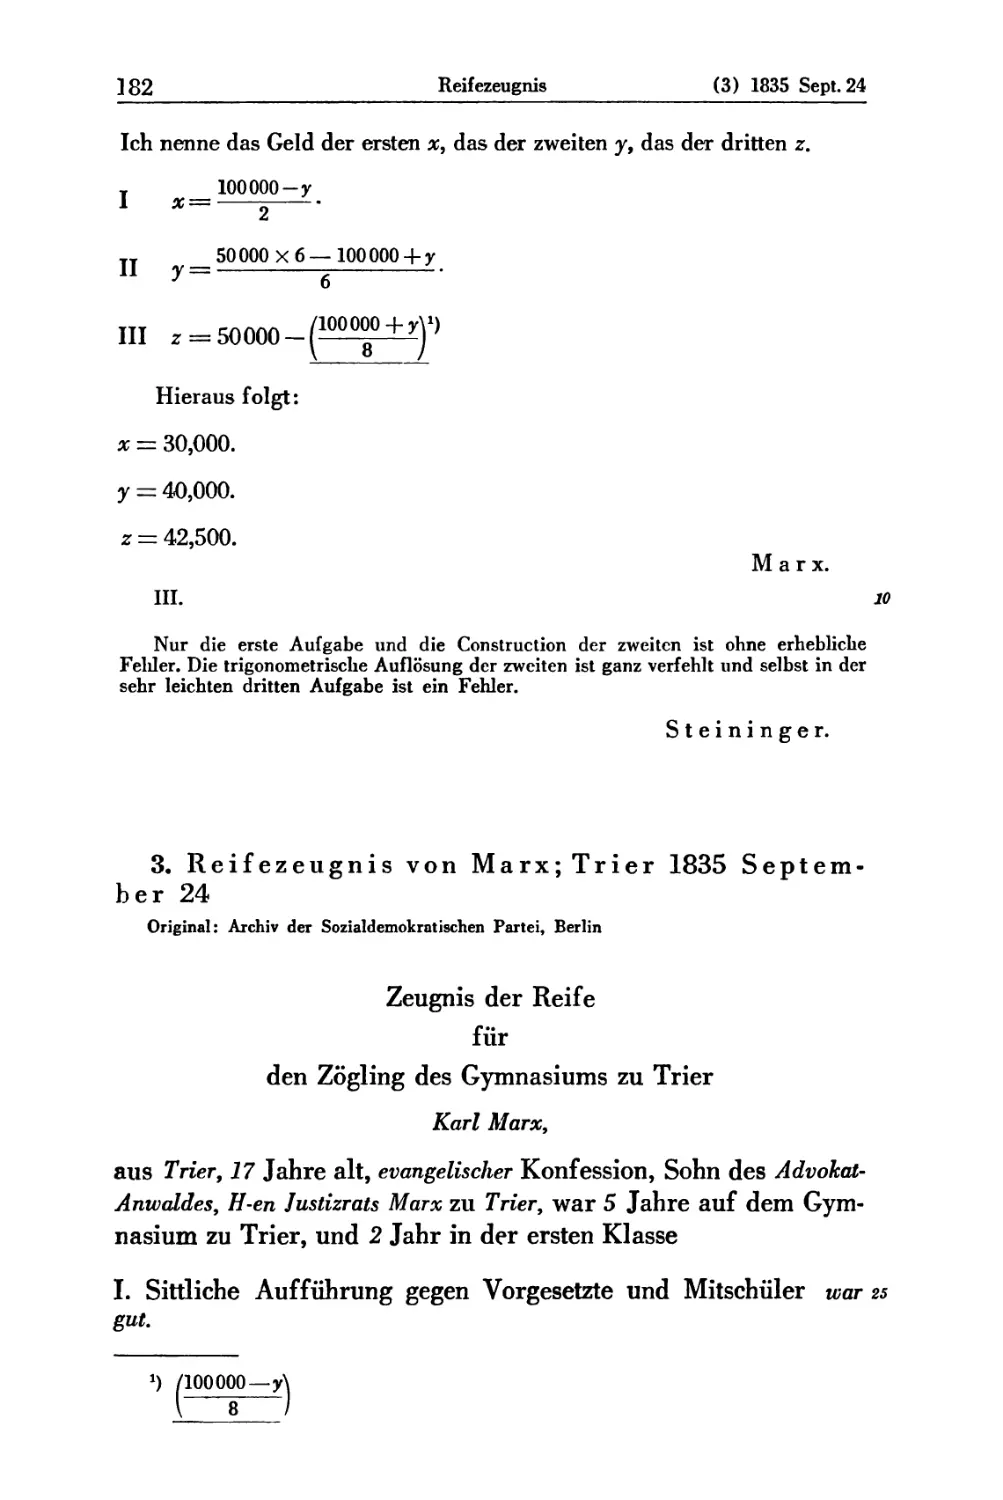 3. Reifezeugnis von Marx; Trier 1835 September 24